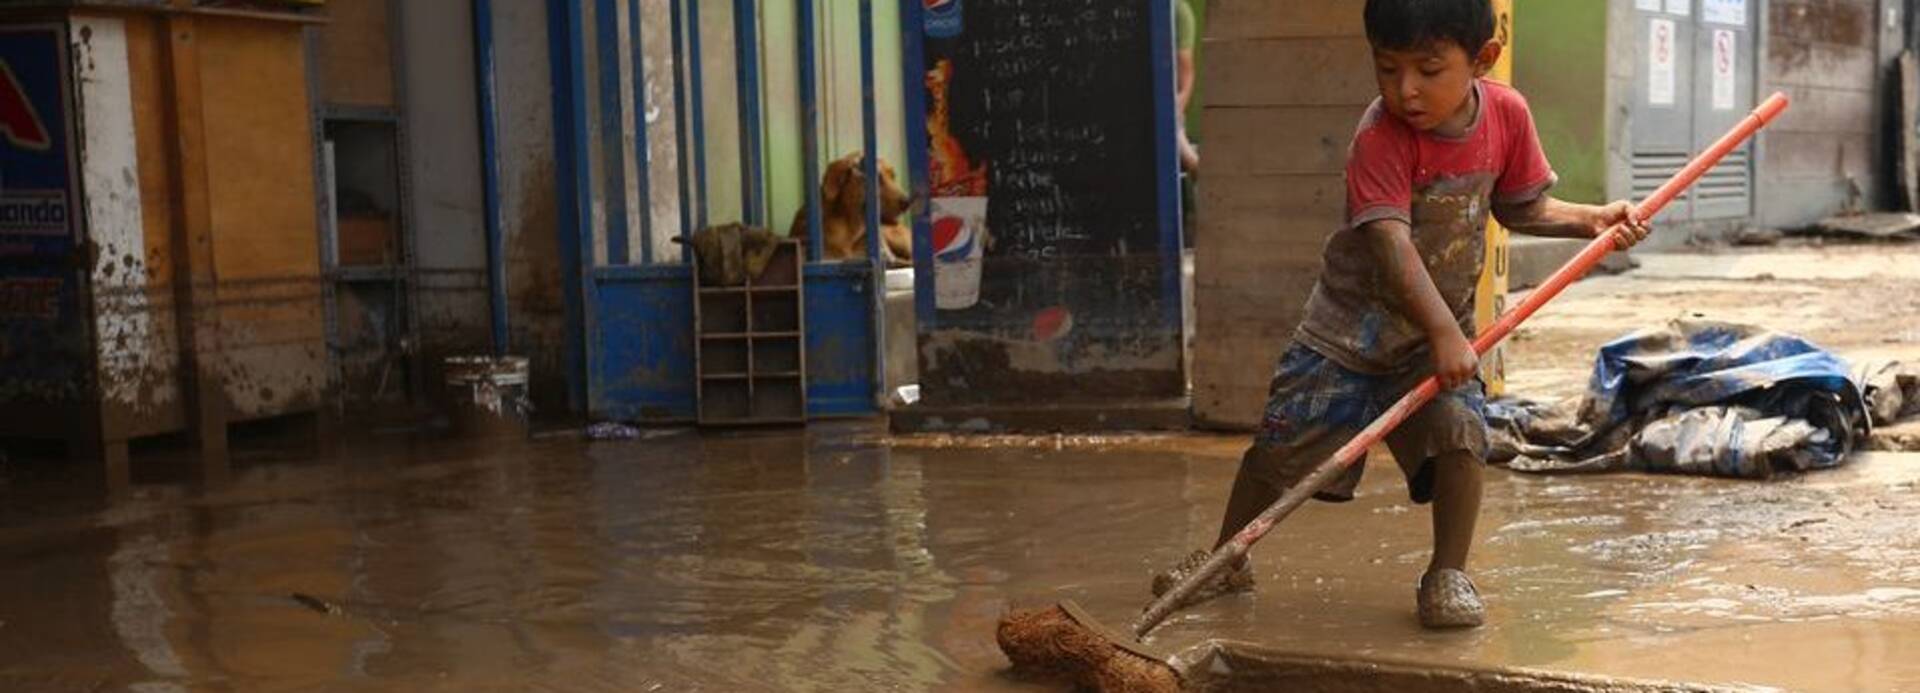 Junge kehrt Schlamm nach Überschwemmung in Peru